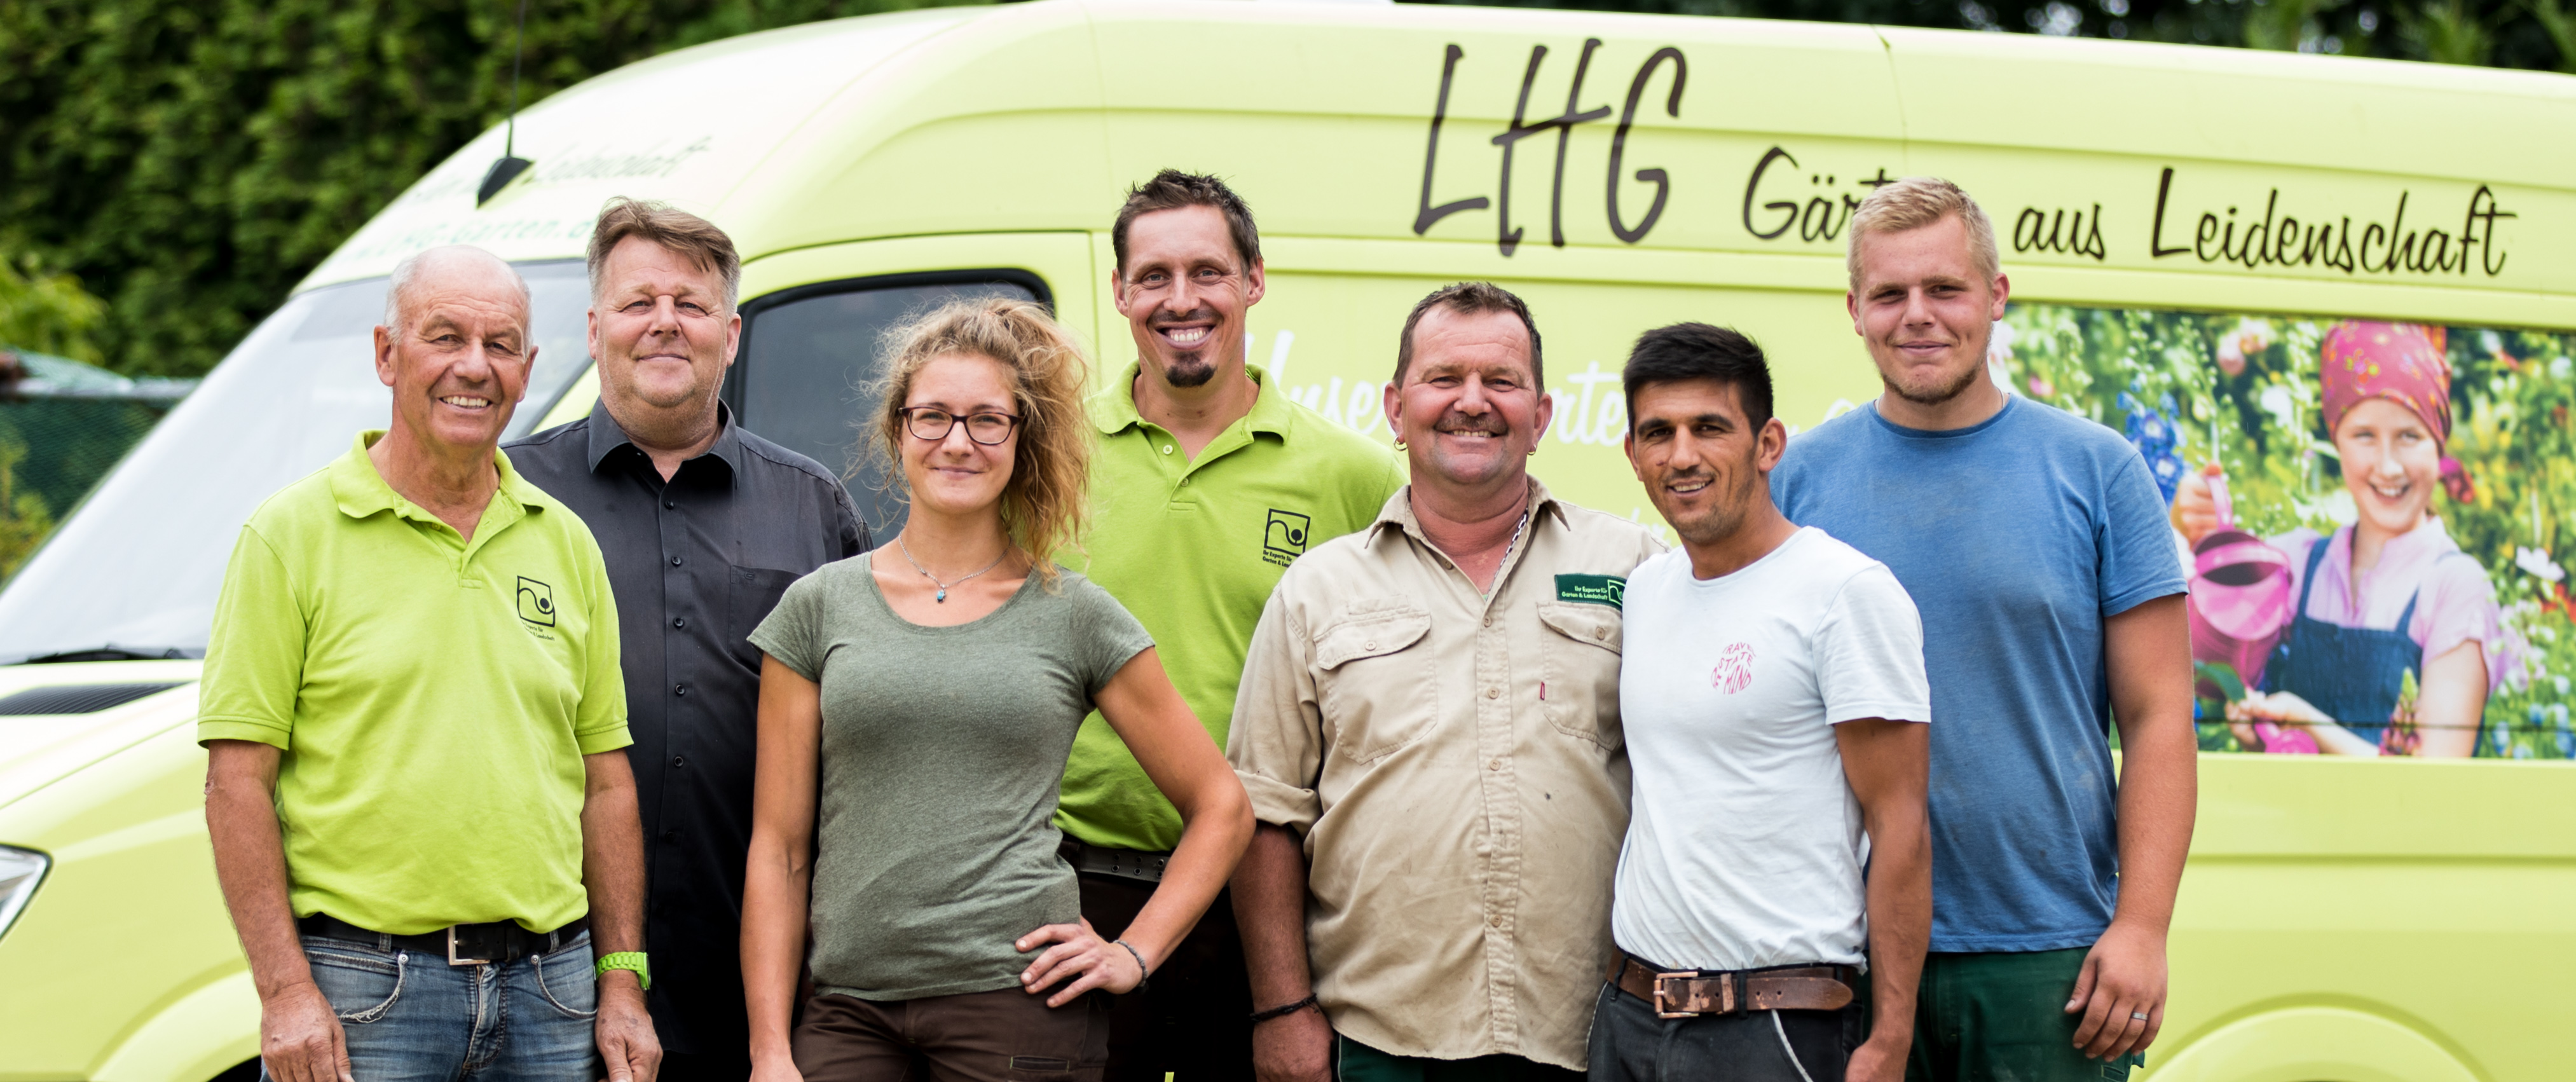 LHG Garten GmbH Team